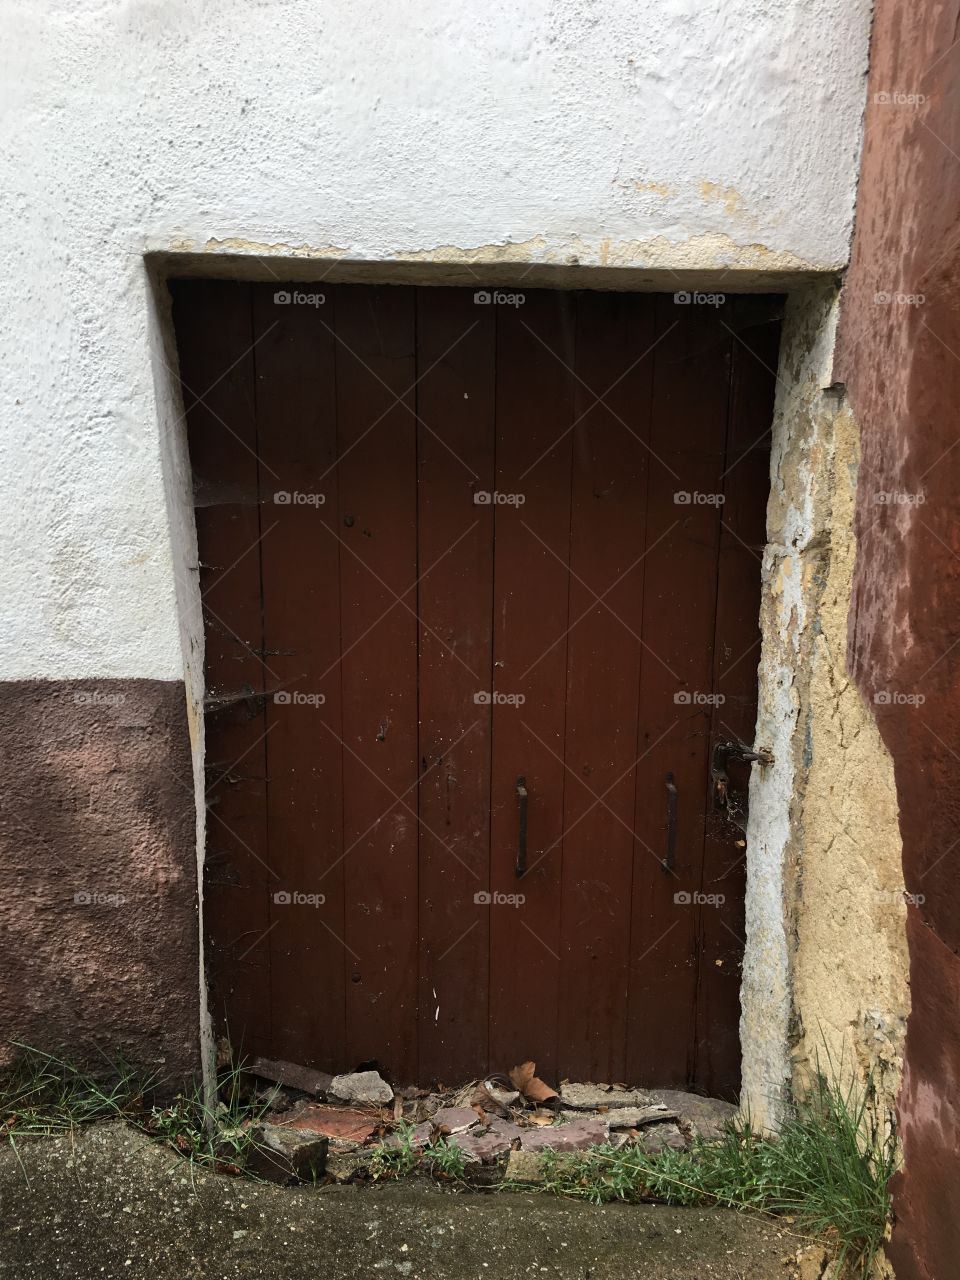 Hidden Entrance 